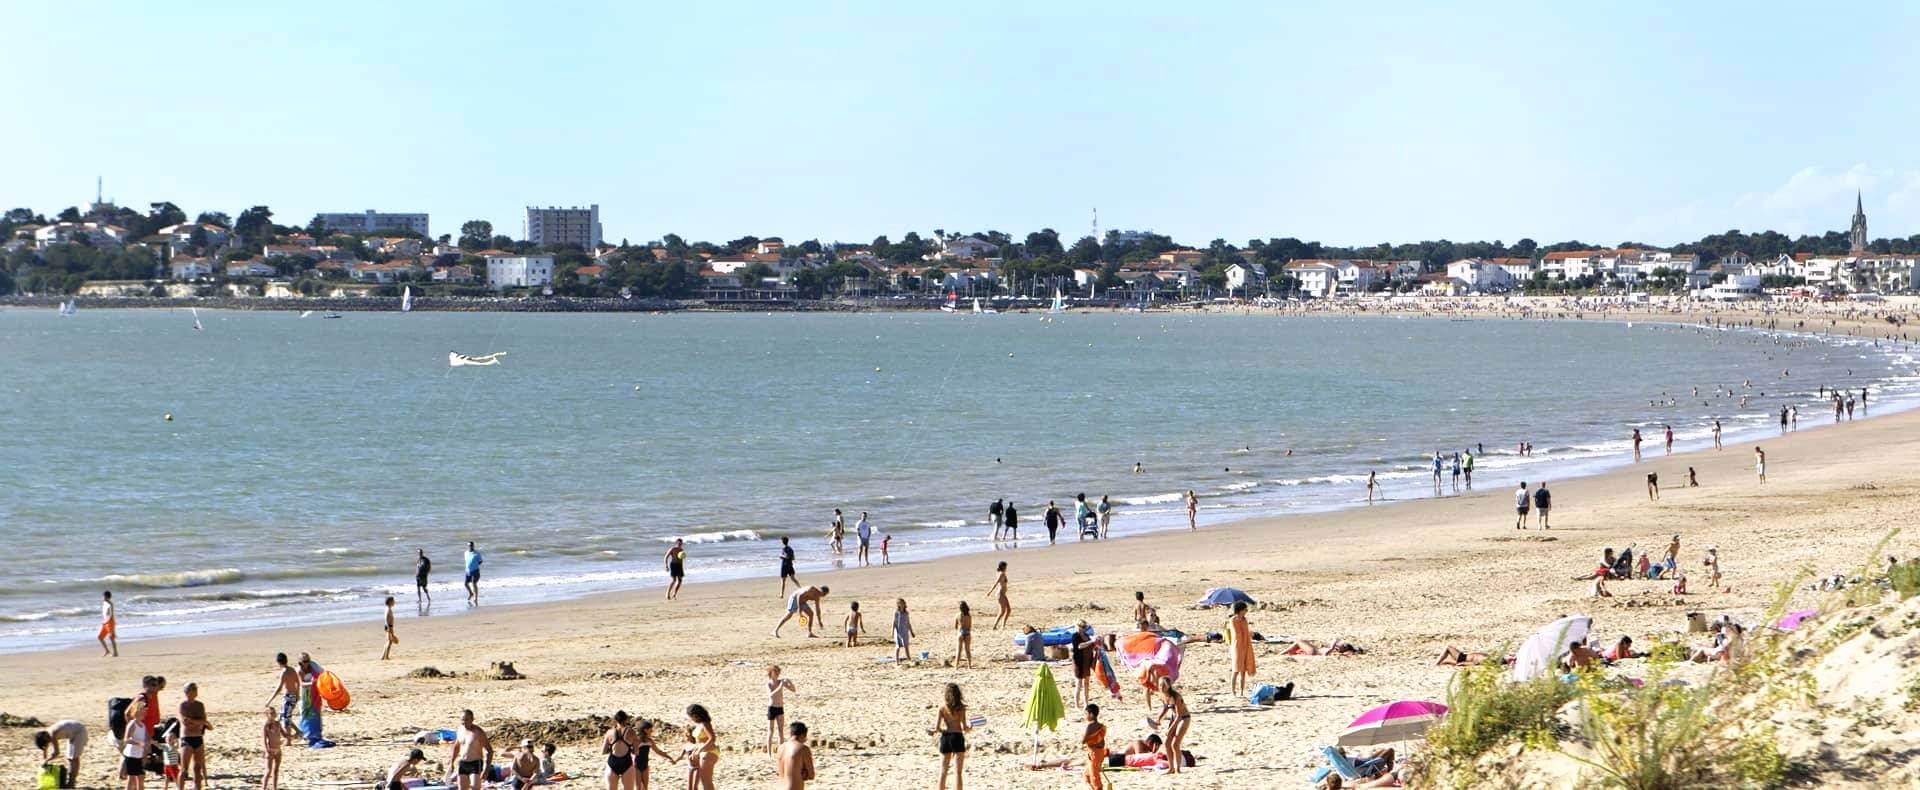 Bord de mer et plages à Royan en Charente Maritime